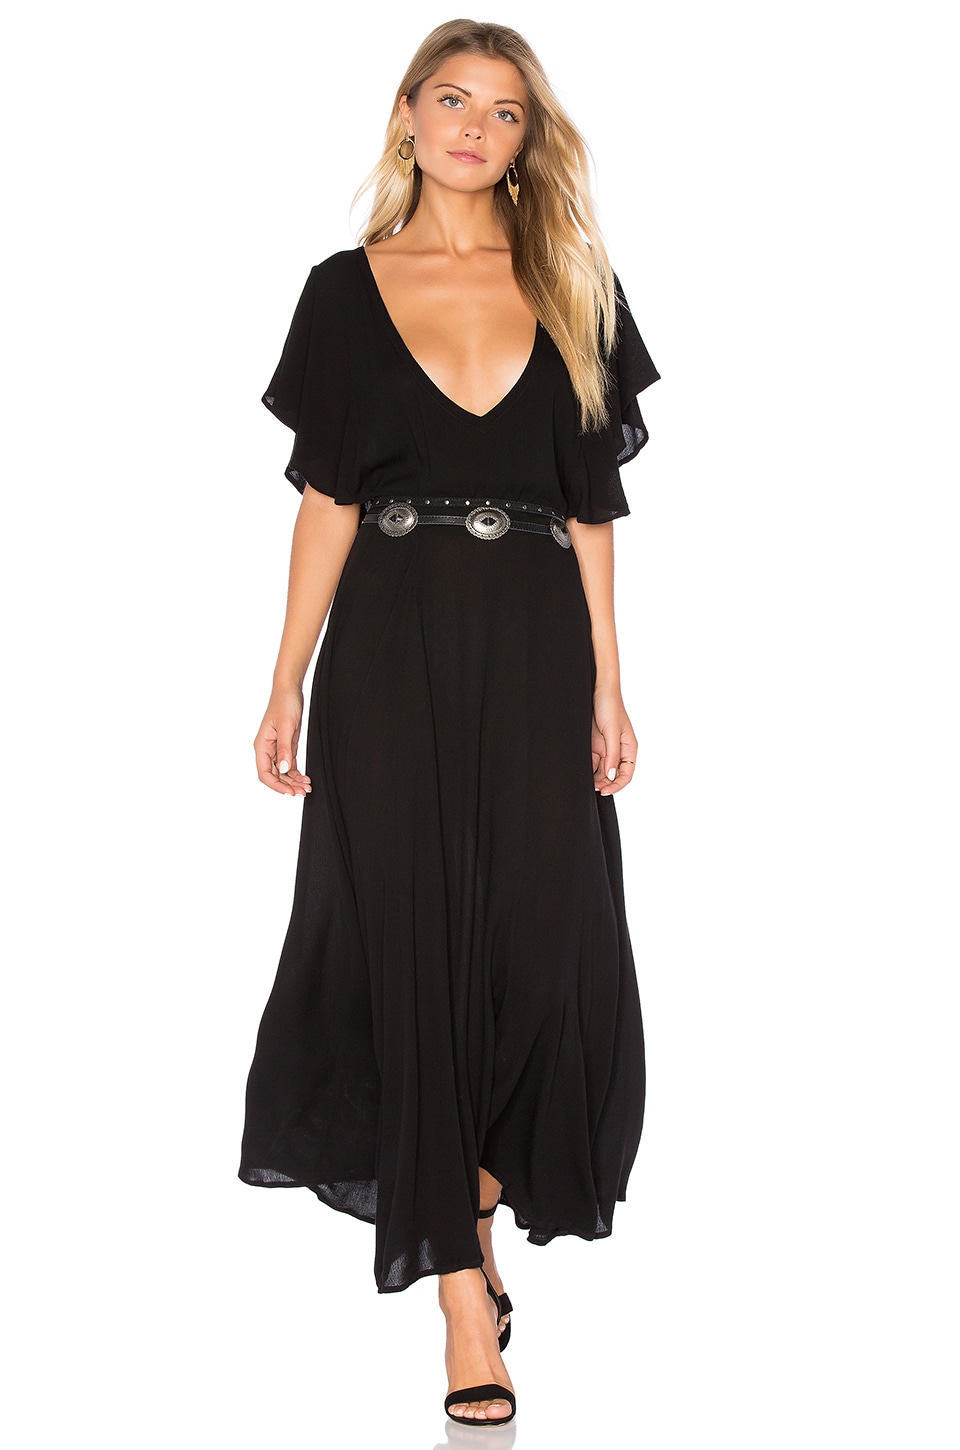 Cleobella Celina Dress in Black | REVOLVE